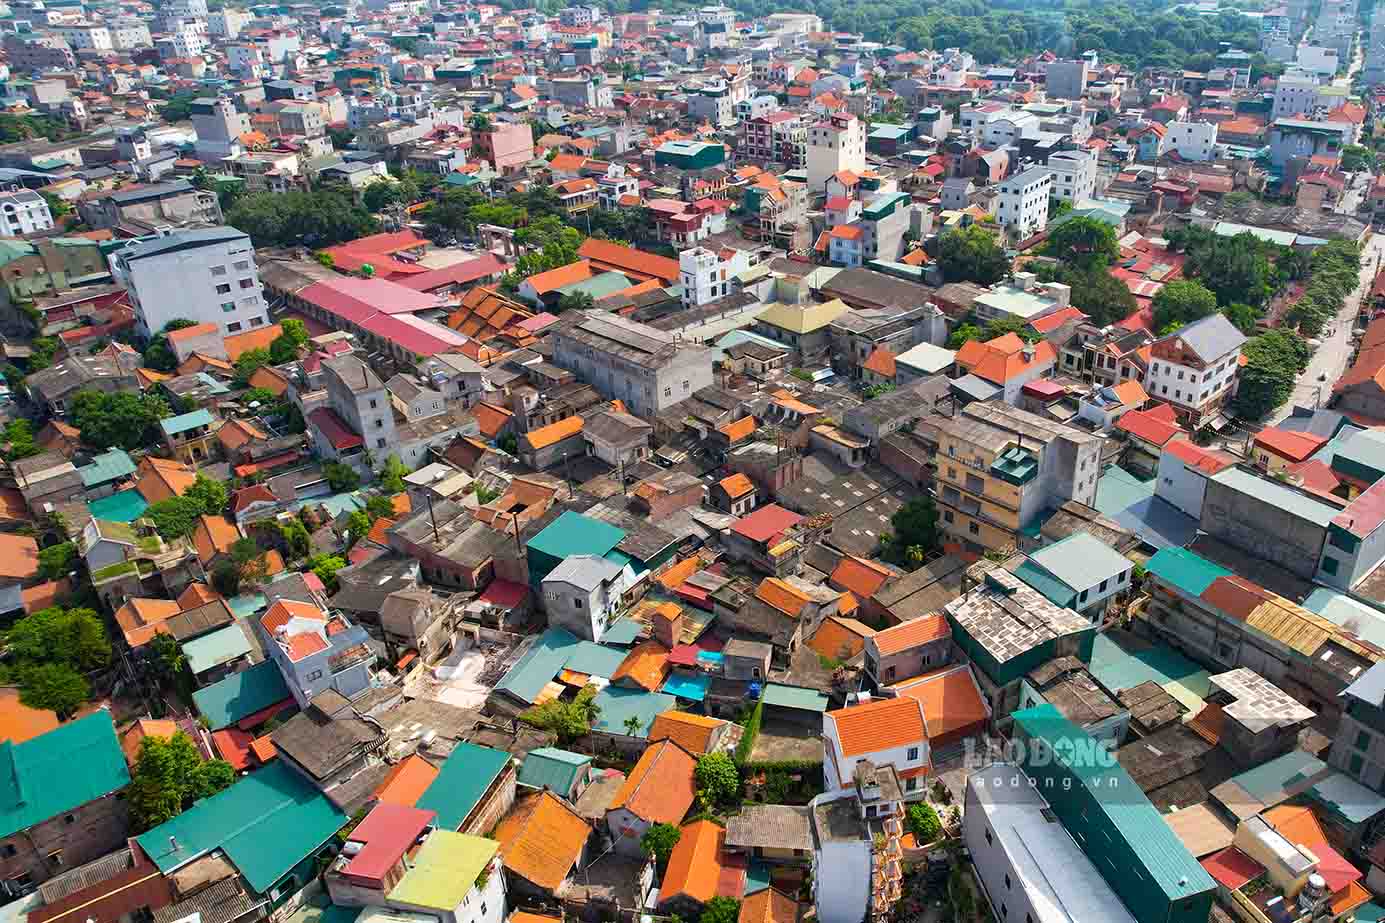 Tuy nhiên, sau khi sáp nhập, Hà Nội trở thành Thủ đô lớn thứ 17 trên thế giới khi nâng diện tích thành phố lên 3,6 lần so với trước đó. Về mật độ dân số, Hà Nội là địa phương đông dân thứ hai của cả nước và có mật độ dân số cao thứ hai trong 63 tỉnh, thành phố trực thuộc Trung ương. Với mật độ dân số là 2.398 người/km2, cao gấp 8,2 lần so với mật độ dân số cả nước. Con số này là cao hơn rất nhiều so với thời điểm trước khi Hà Nội mở rộng địa giới hành chính.